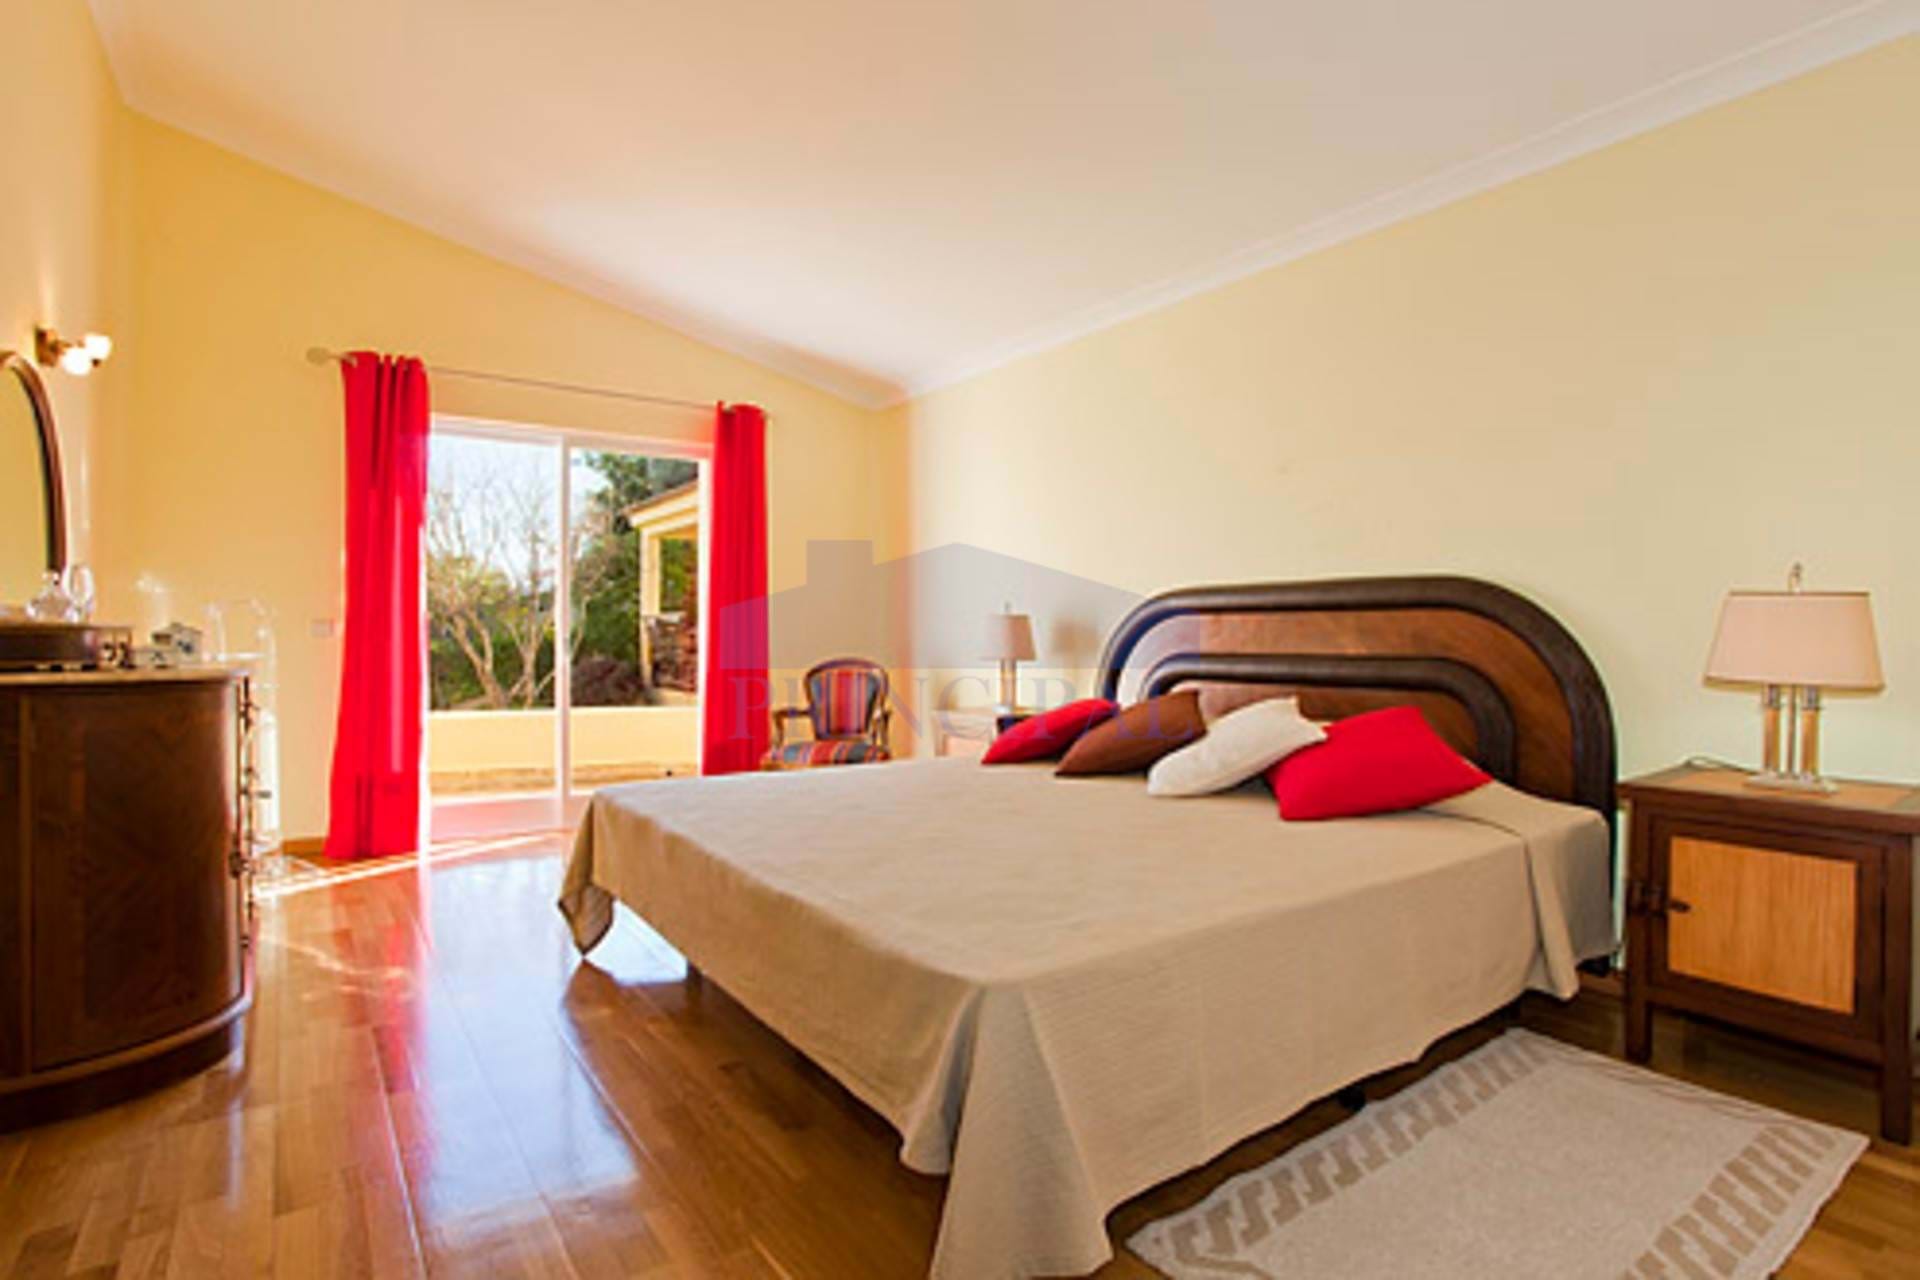 3 +1 Bedroom Villa renovated in quiet urbanization in the Páteo area